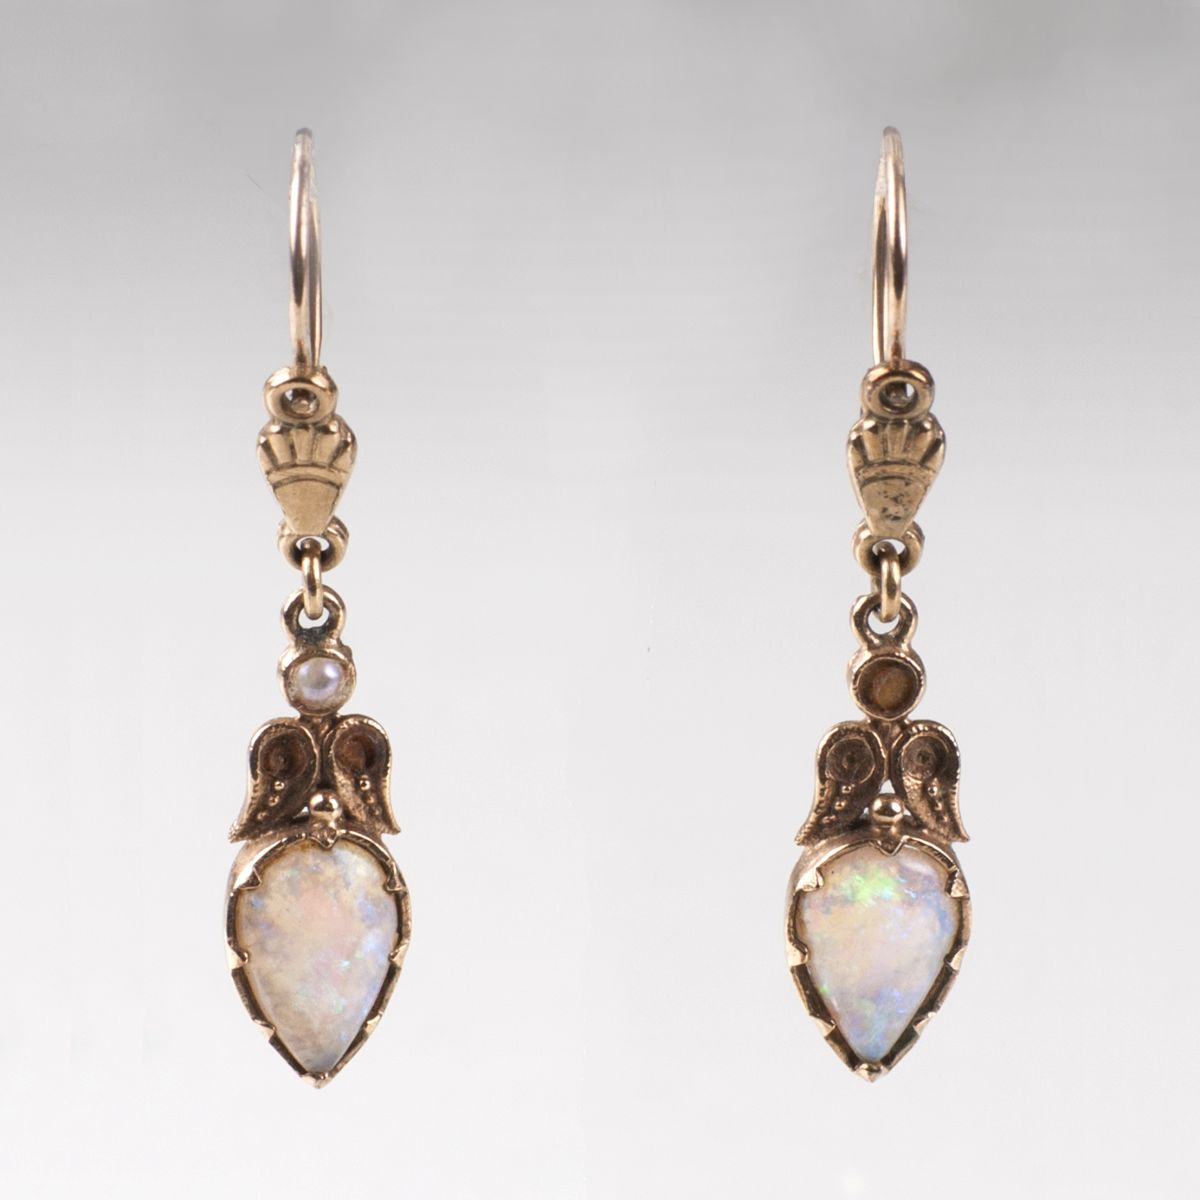 A pair of art nouveau opal earpendants